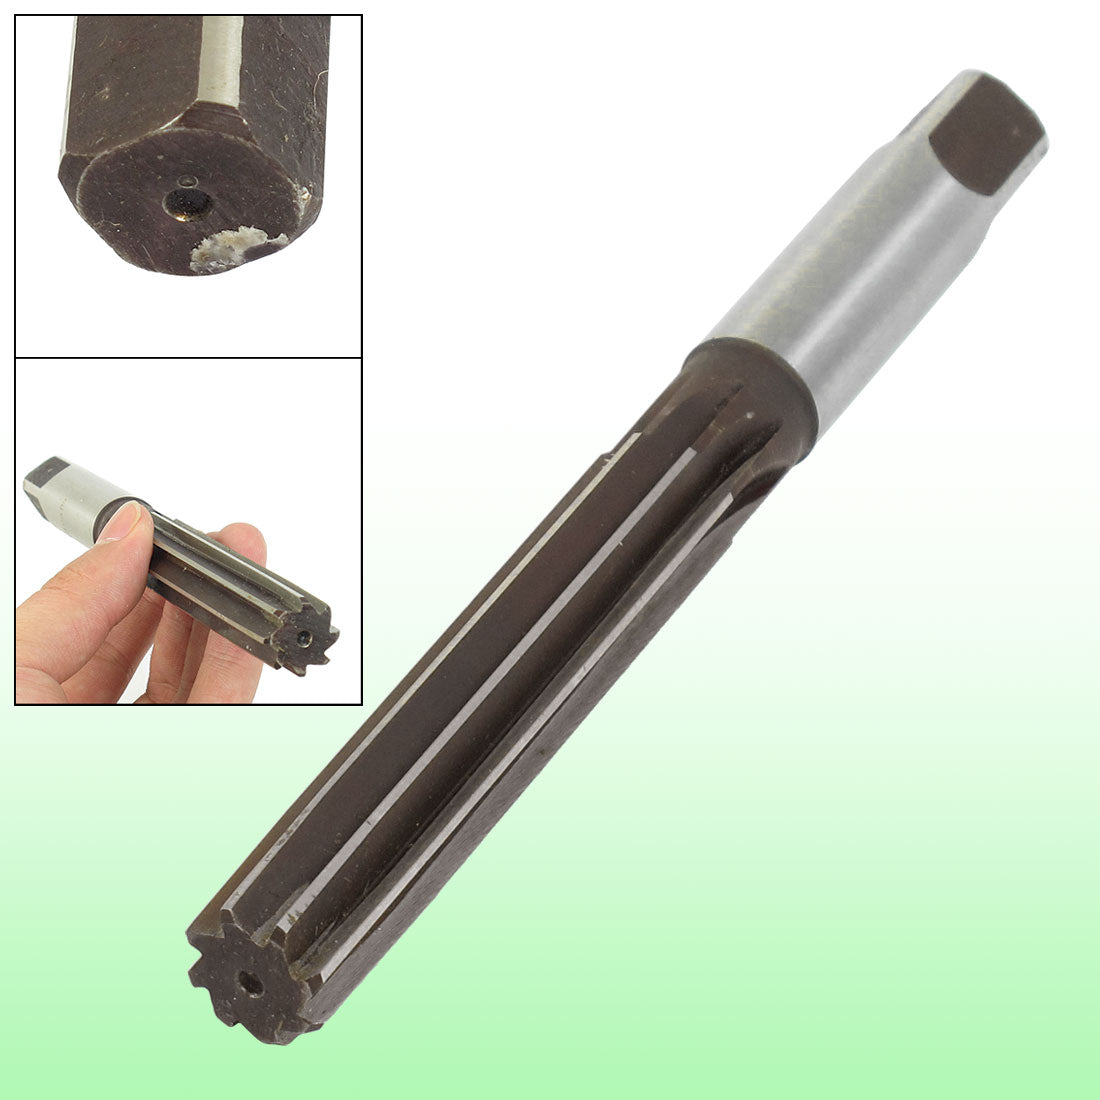 uxcell Uxcell 18mm Diameter 8 Flutes HSS Machine Reamer Milling Cutter Tool